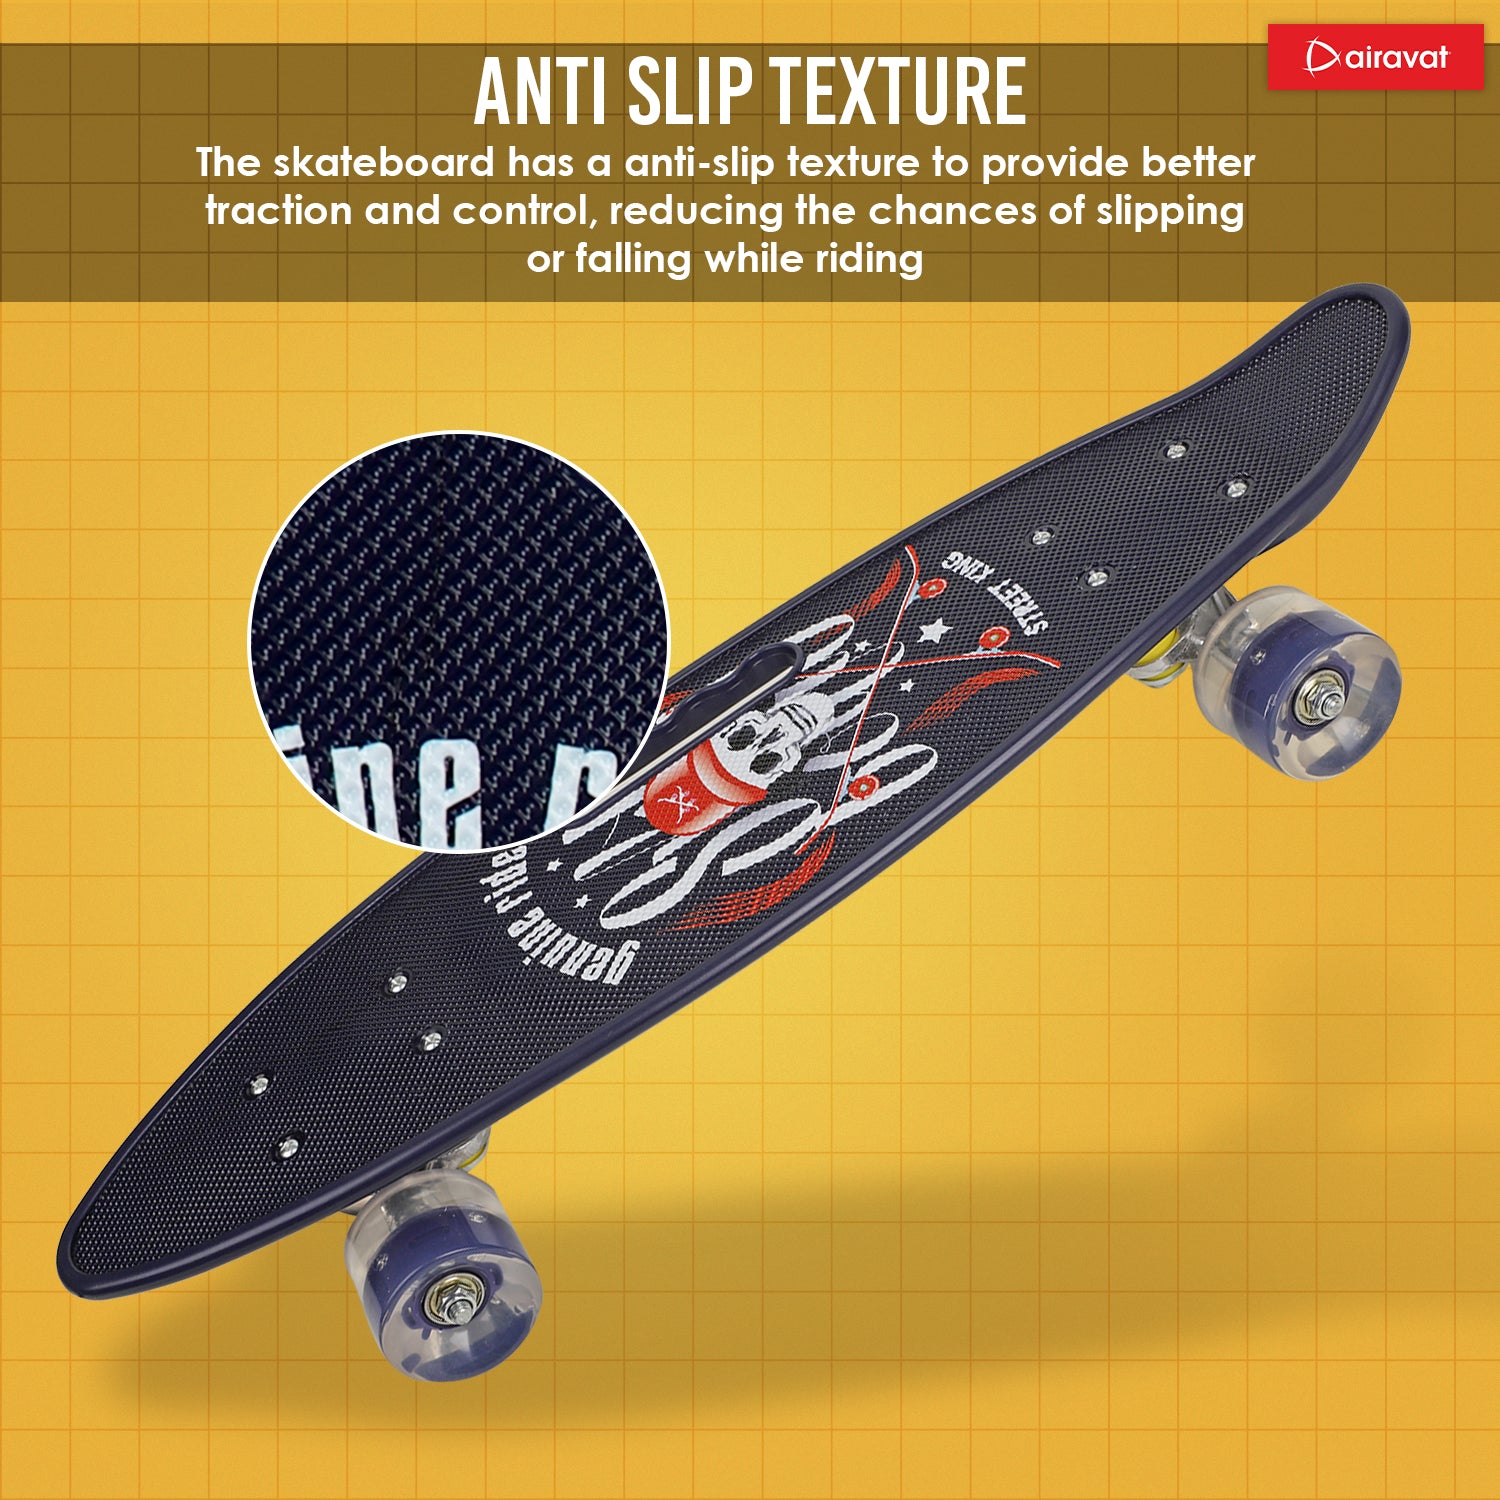 7813-skateboard-style3-anti-slip-texture